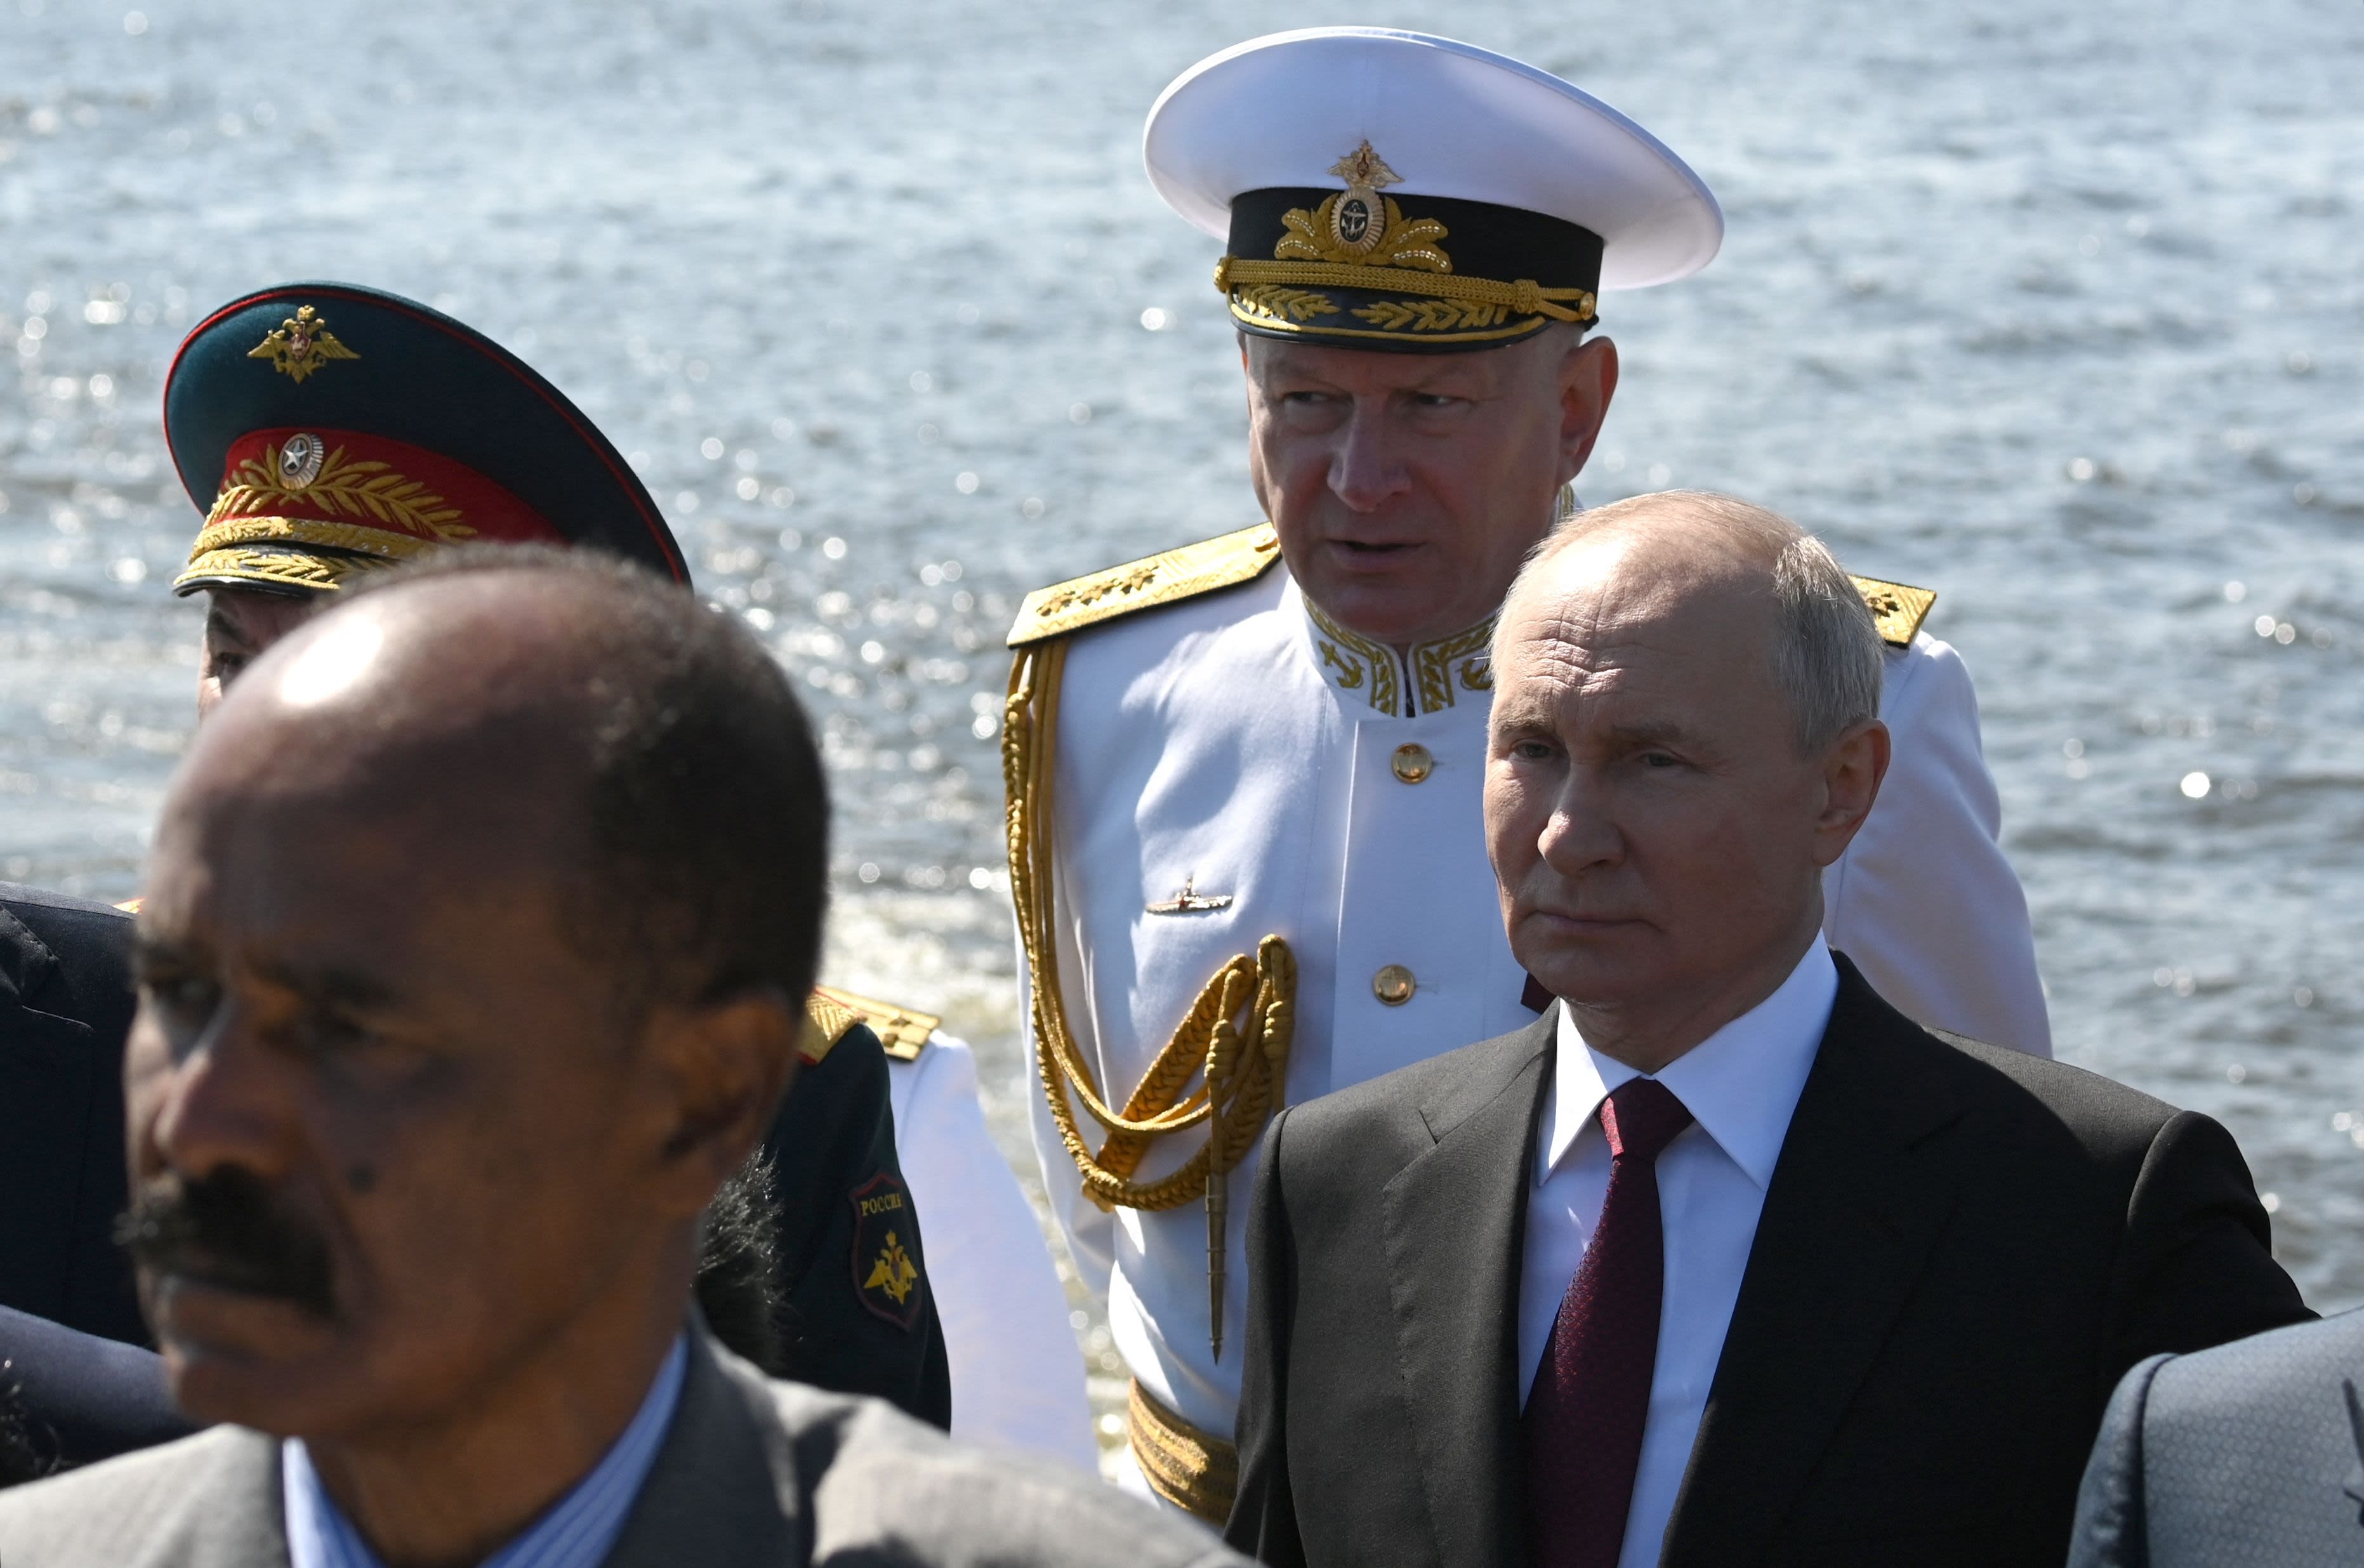 Putin's big naval parade loses warships, subs: Local media